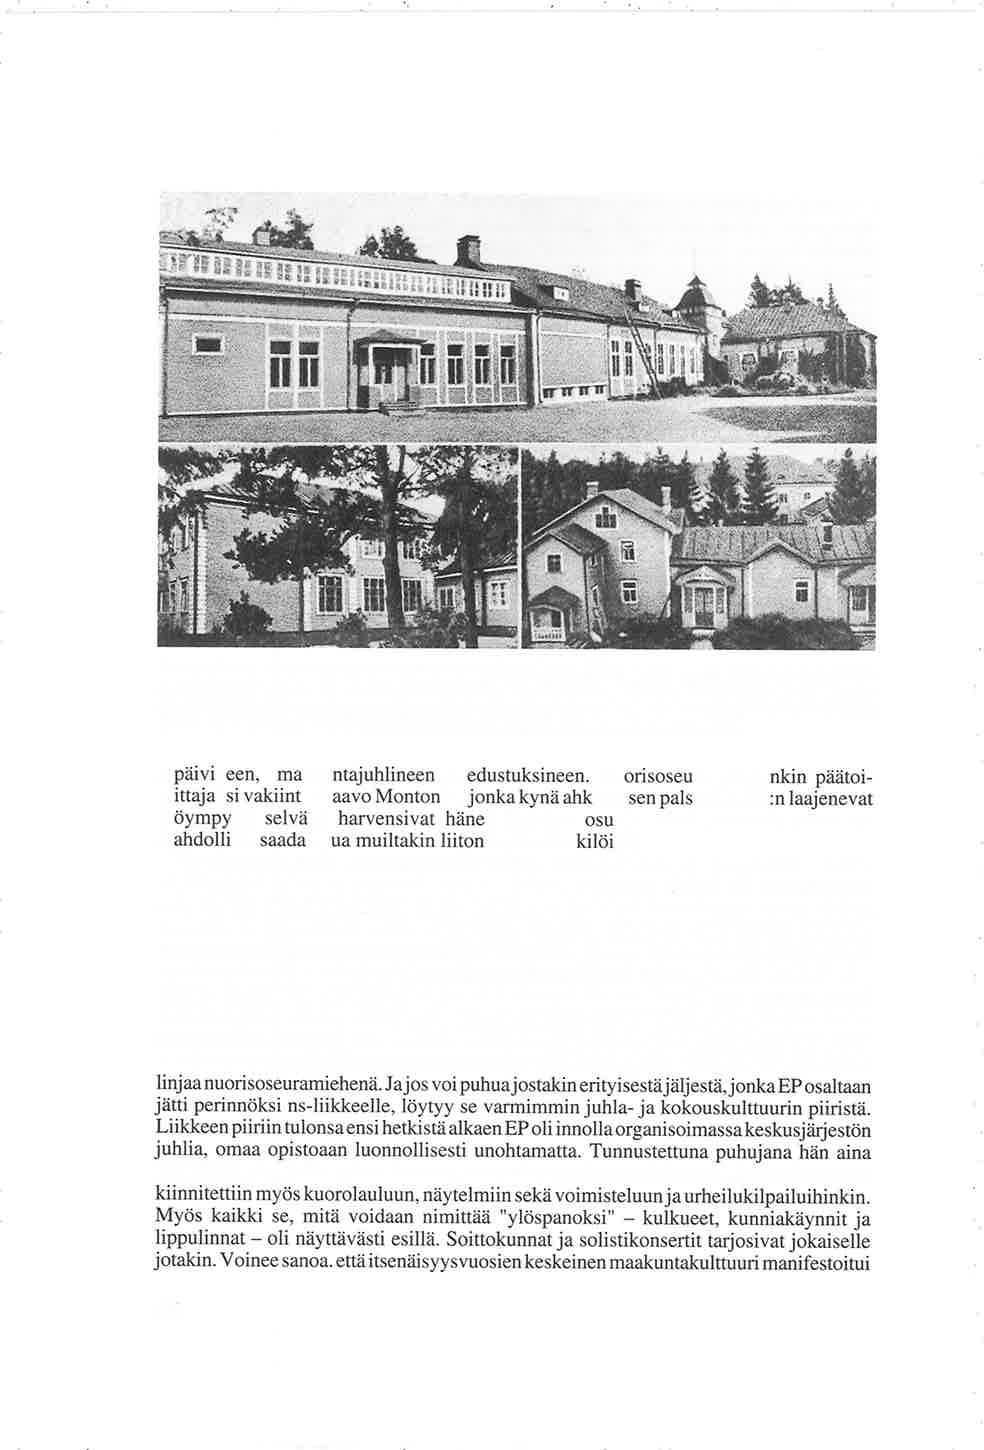 Kanneljärven kansanopisto suurten remonttien jälkeen 1934. - Ylh. suuri päärakennus, jonka rakenneosat vas:lta 1) vanha emäntäkoulu, 2) näyttämö (ikkunat kivija/assa) ja 3) vanha päärakennus.